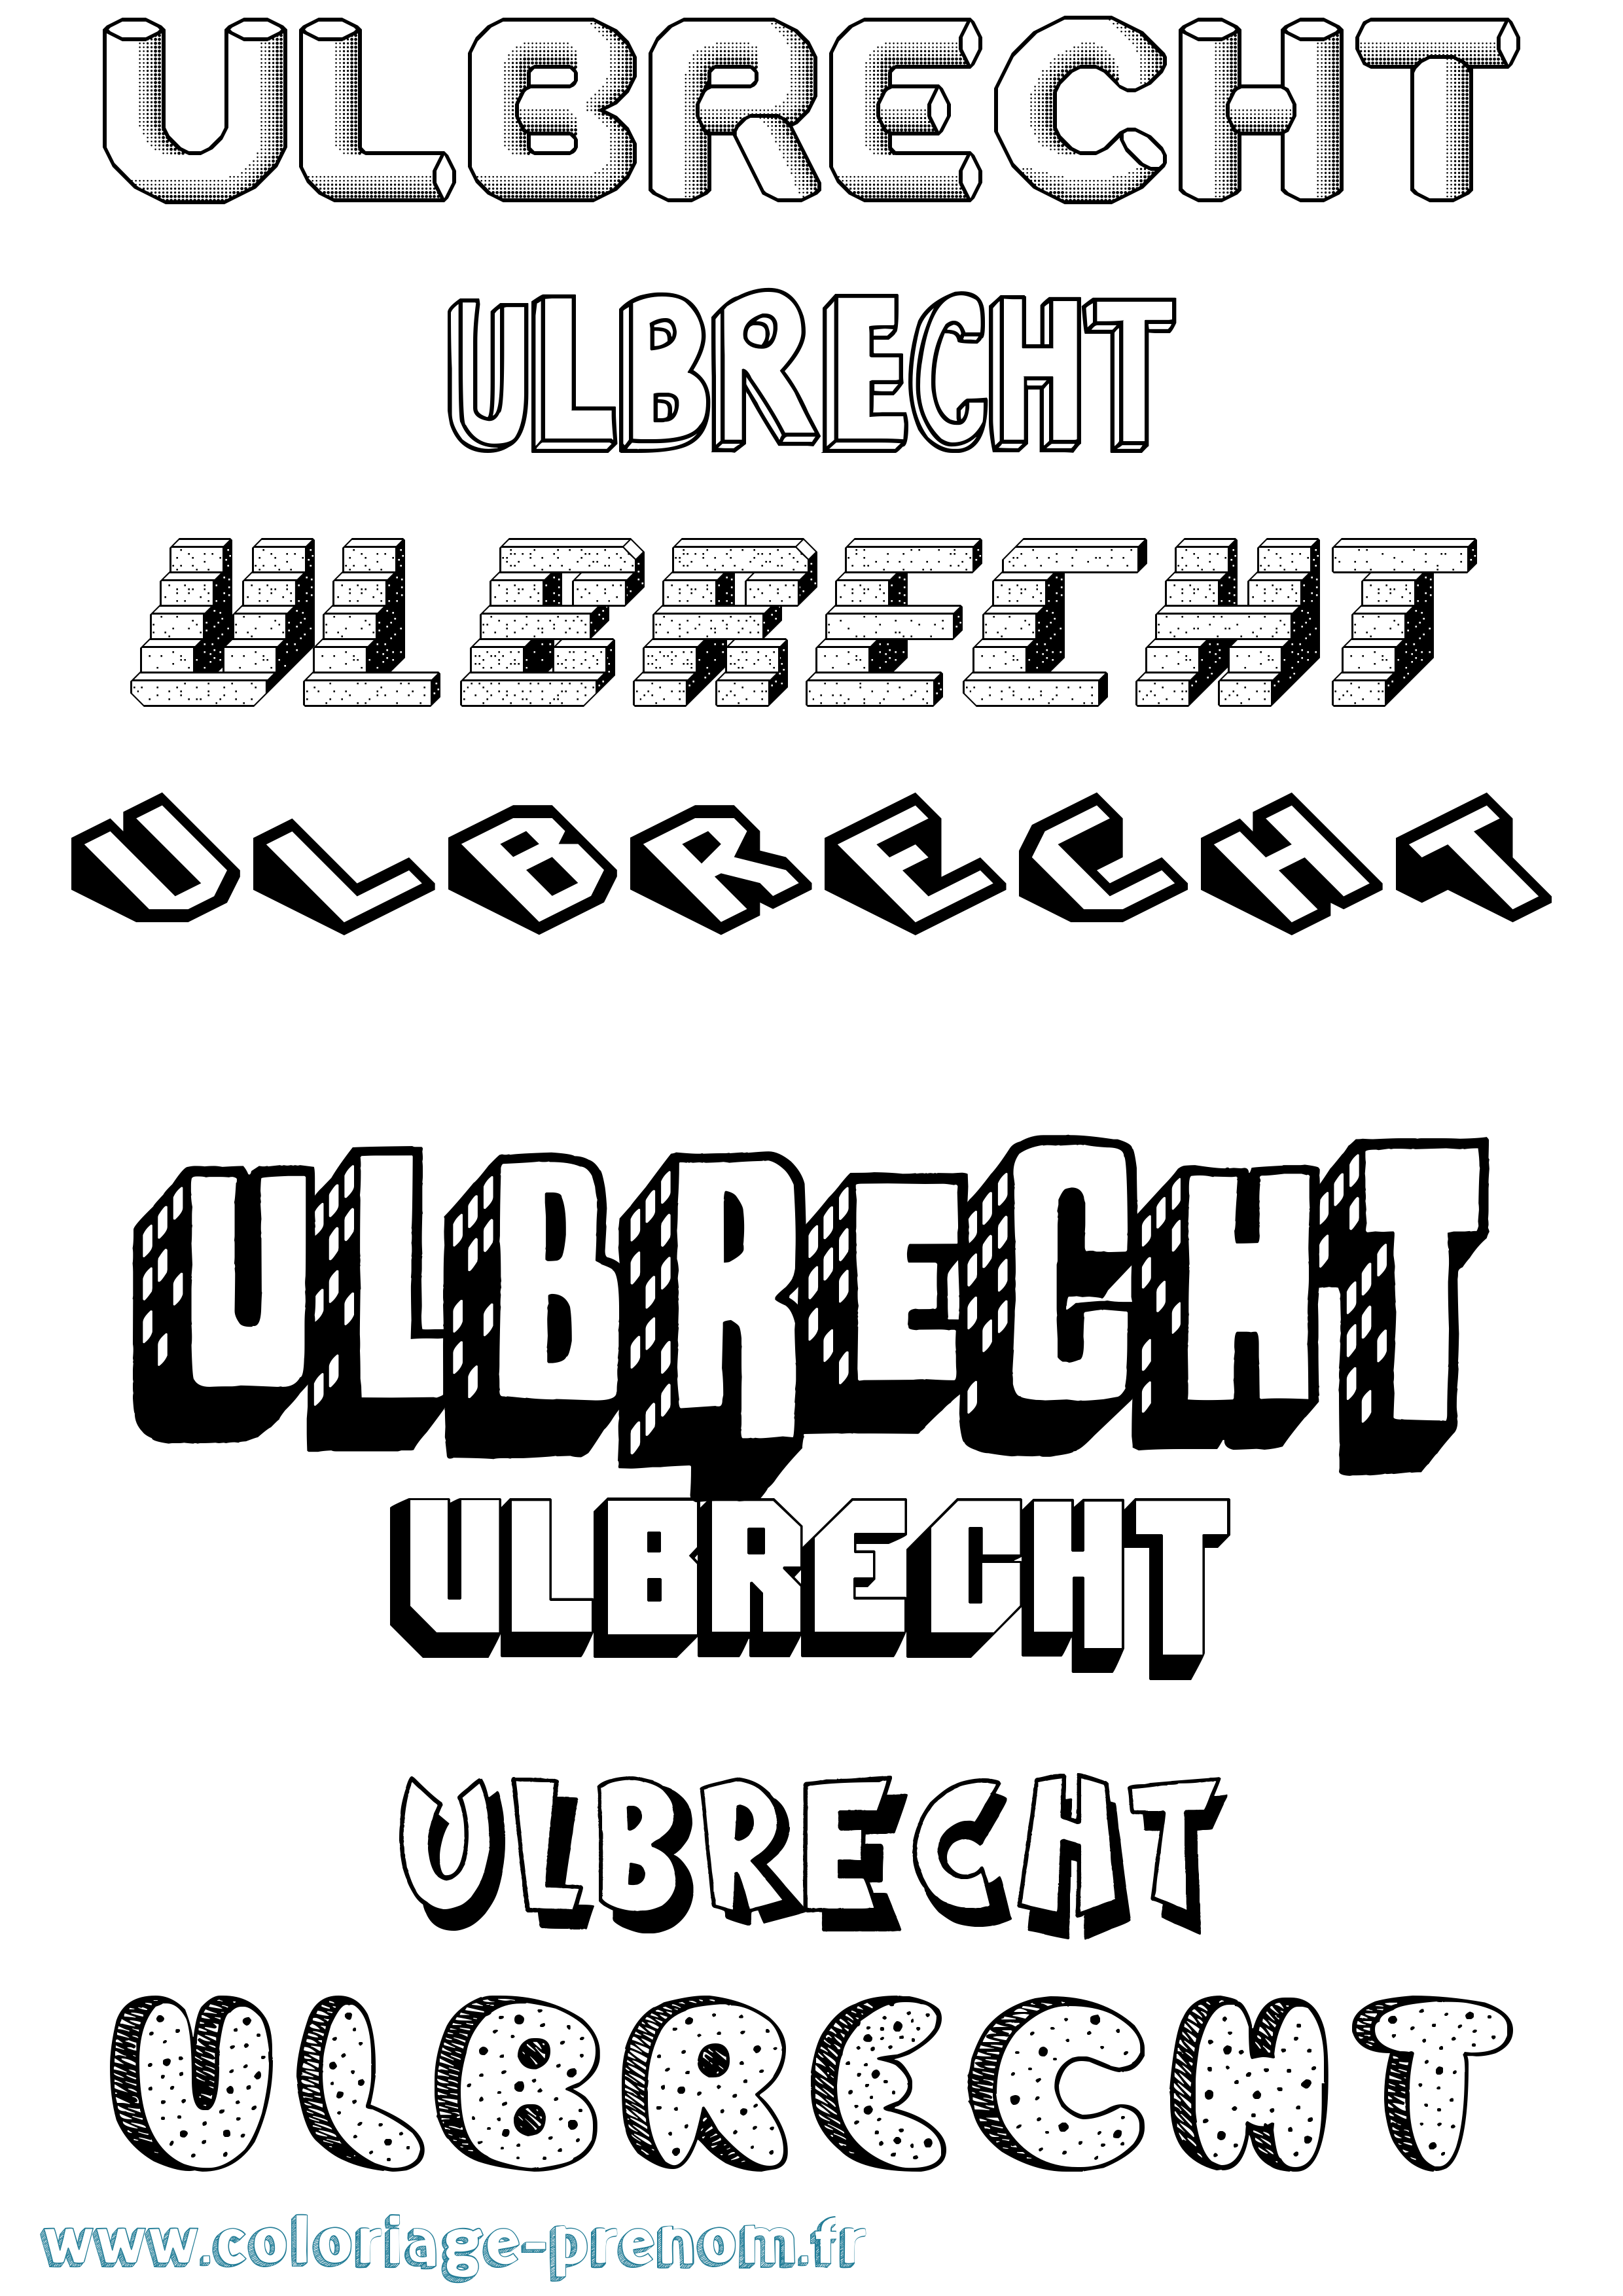 Coloriage prénom Ulbrecht Effet 3D